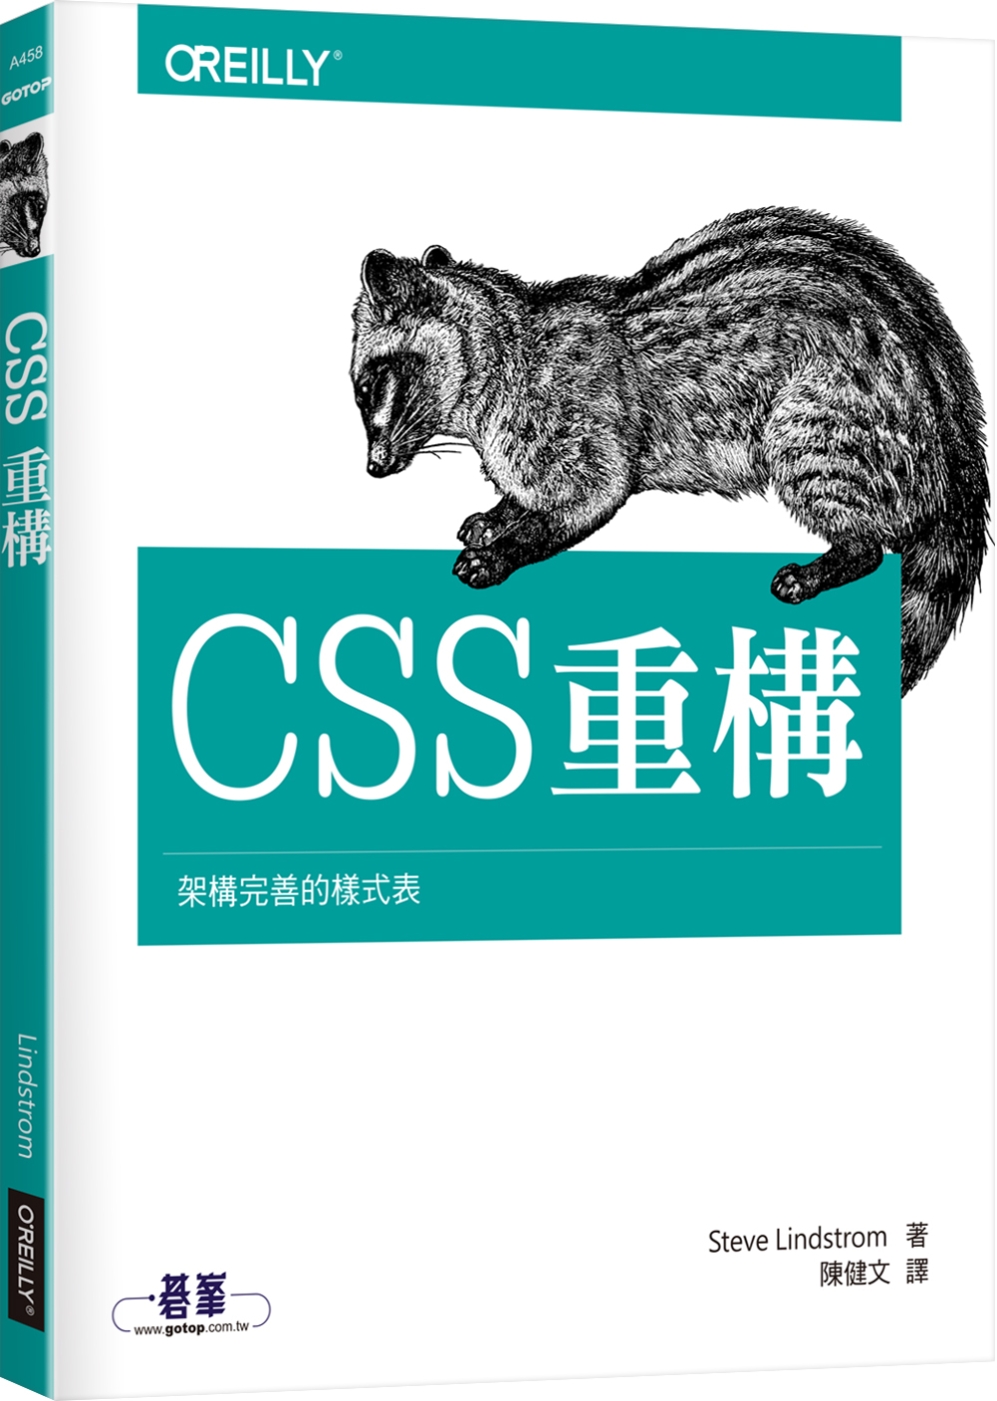 CSS重構